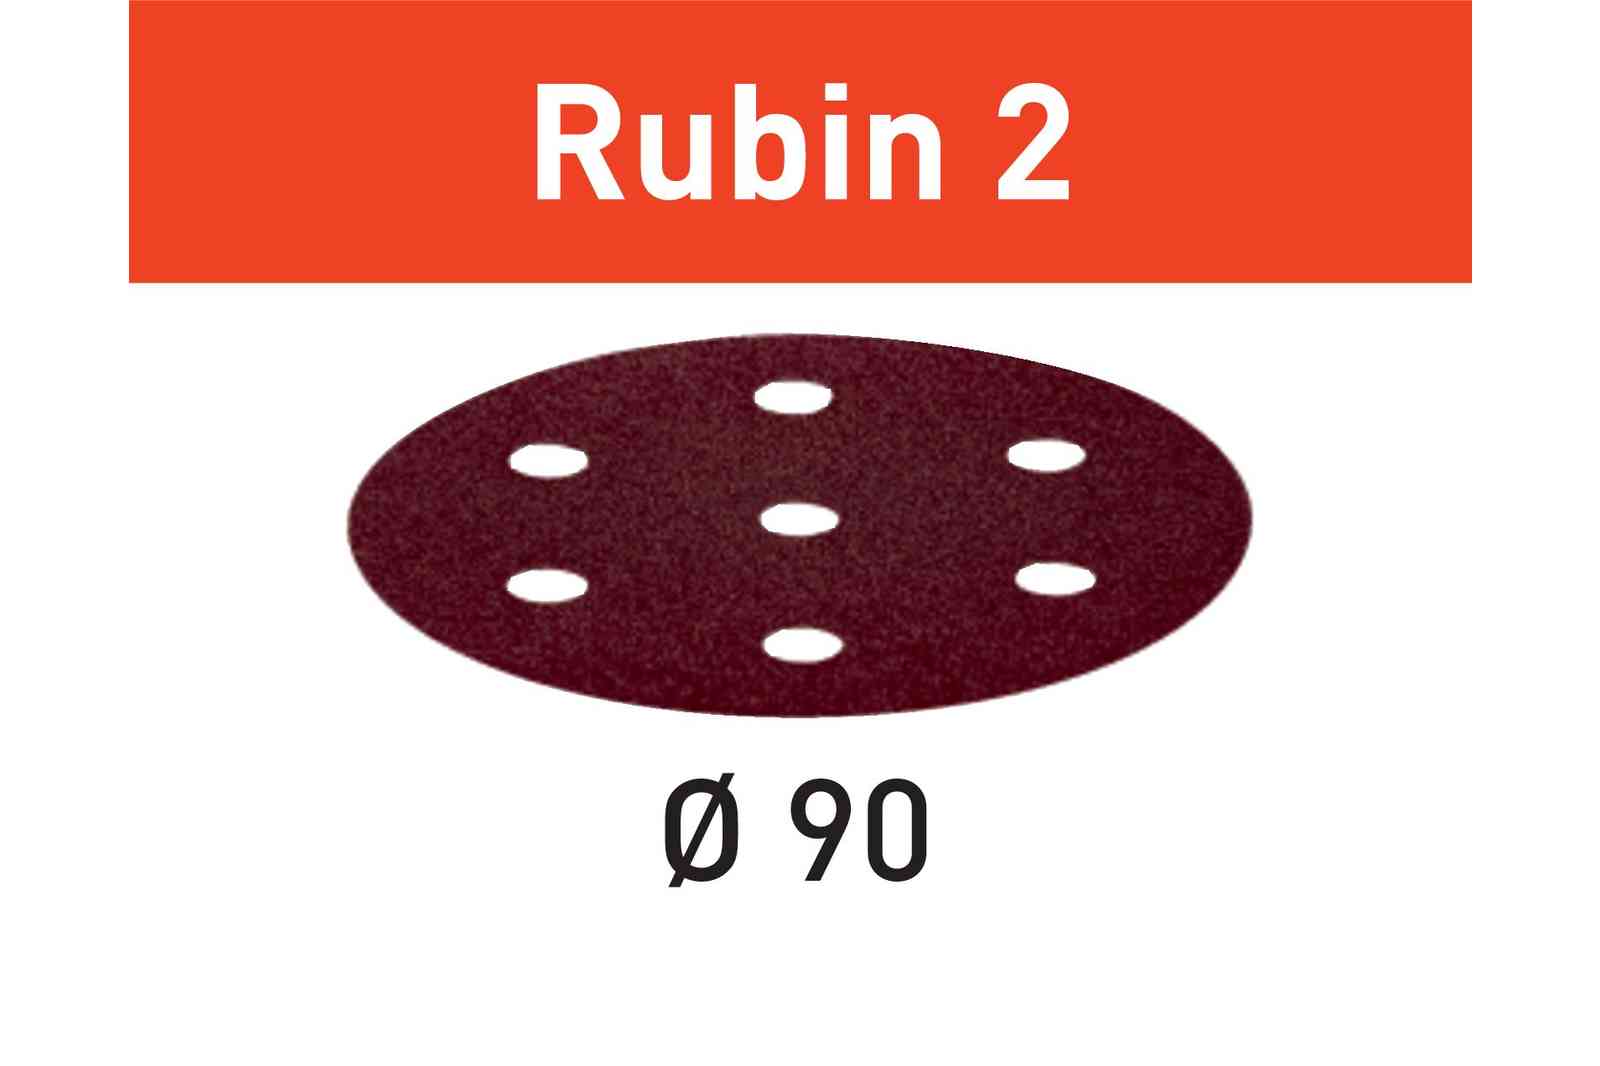 FESTOOL -  Abrasivo RUBIN 2 disco carta uso automatico per levigatura legno - metallo - resine - dimensioni Ø 90 - grana 120 - formato 6 FORI + 1 - note PER RO 90 DX